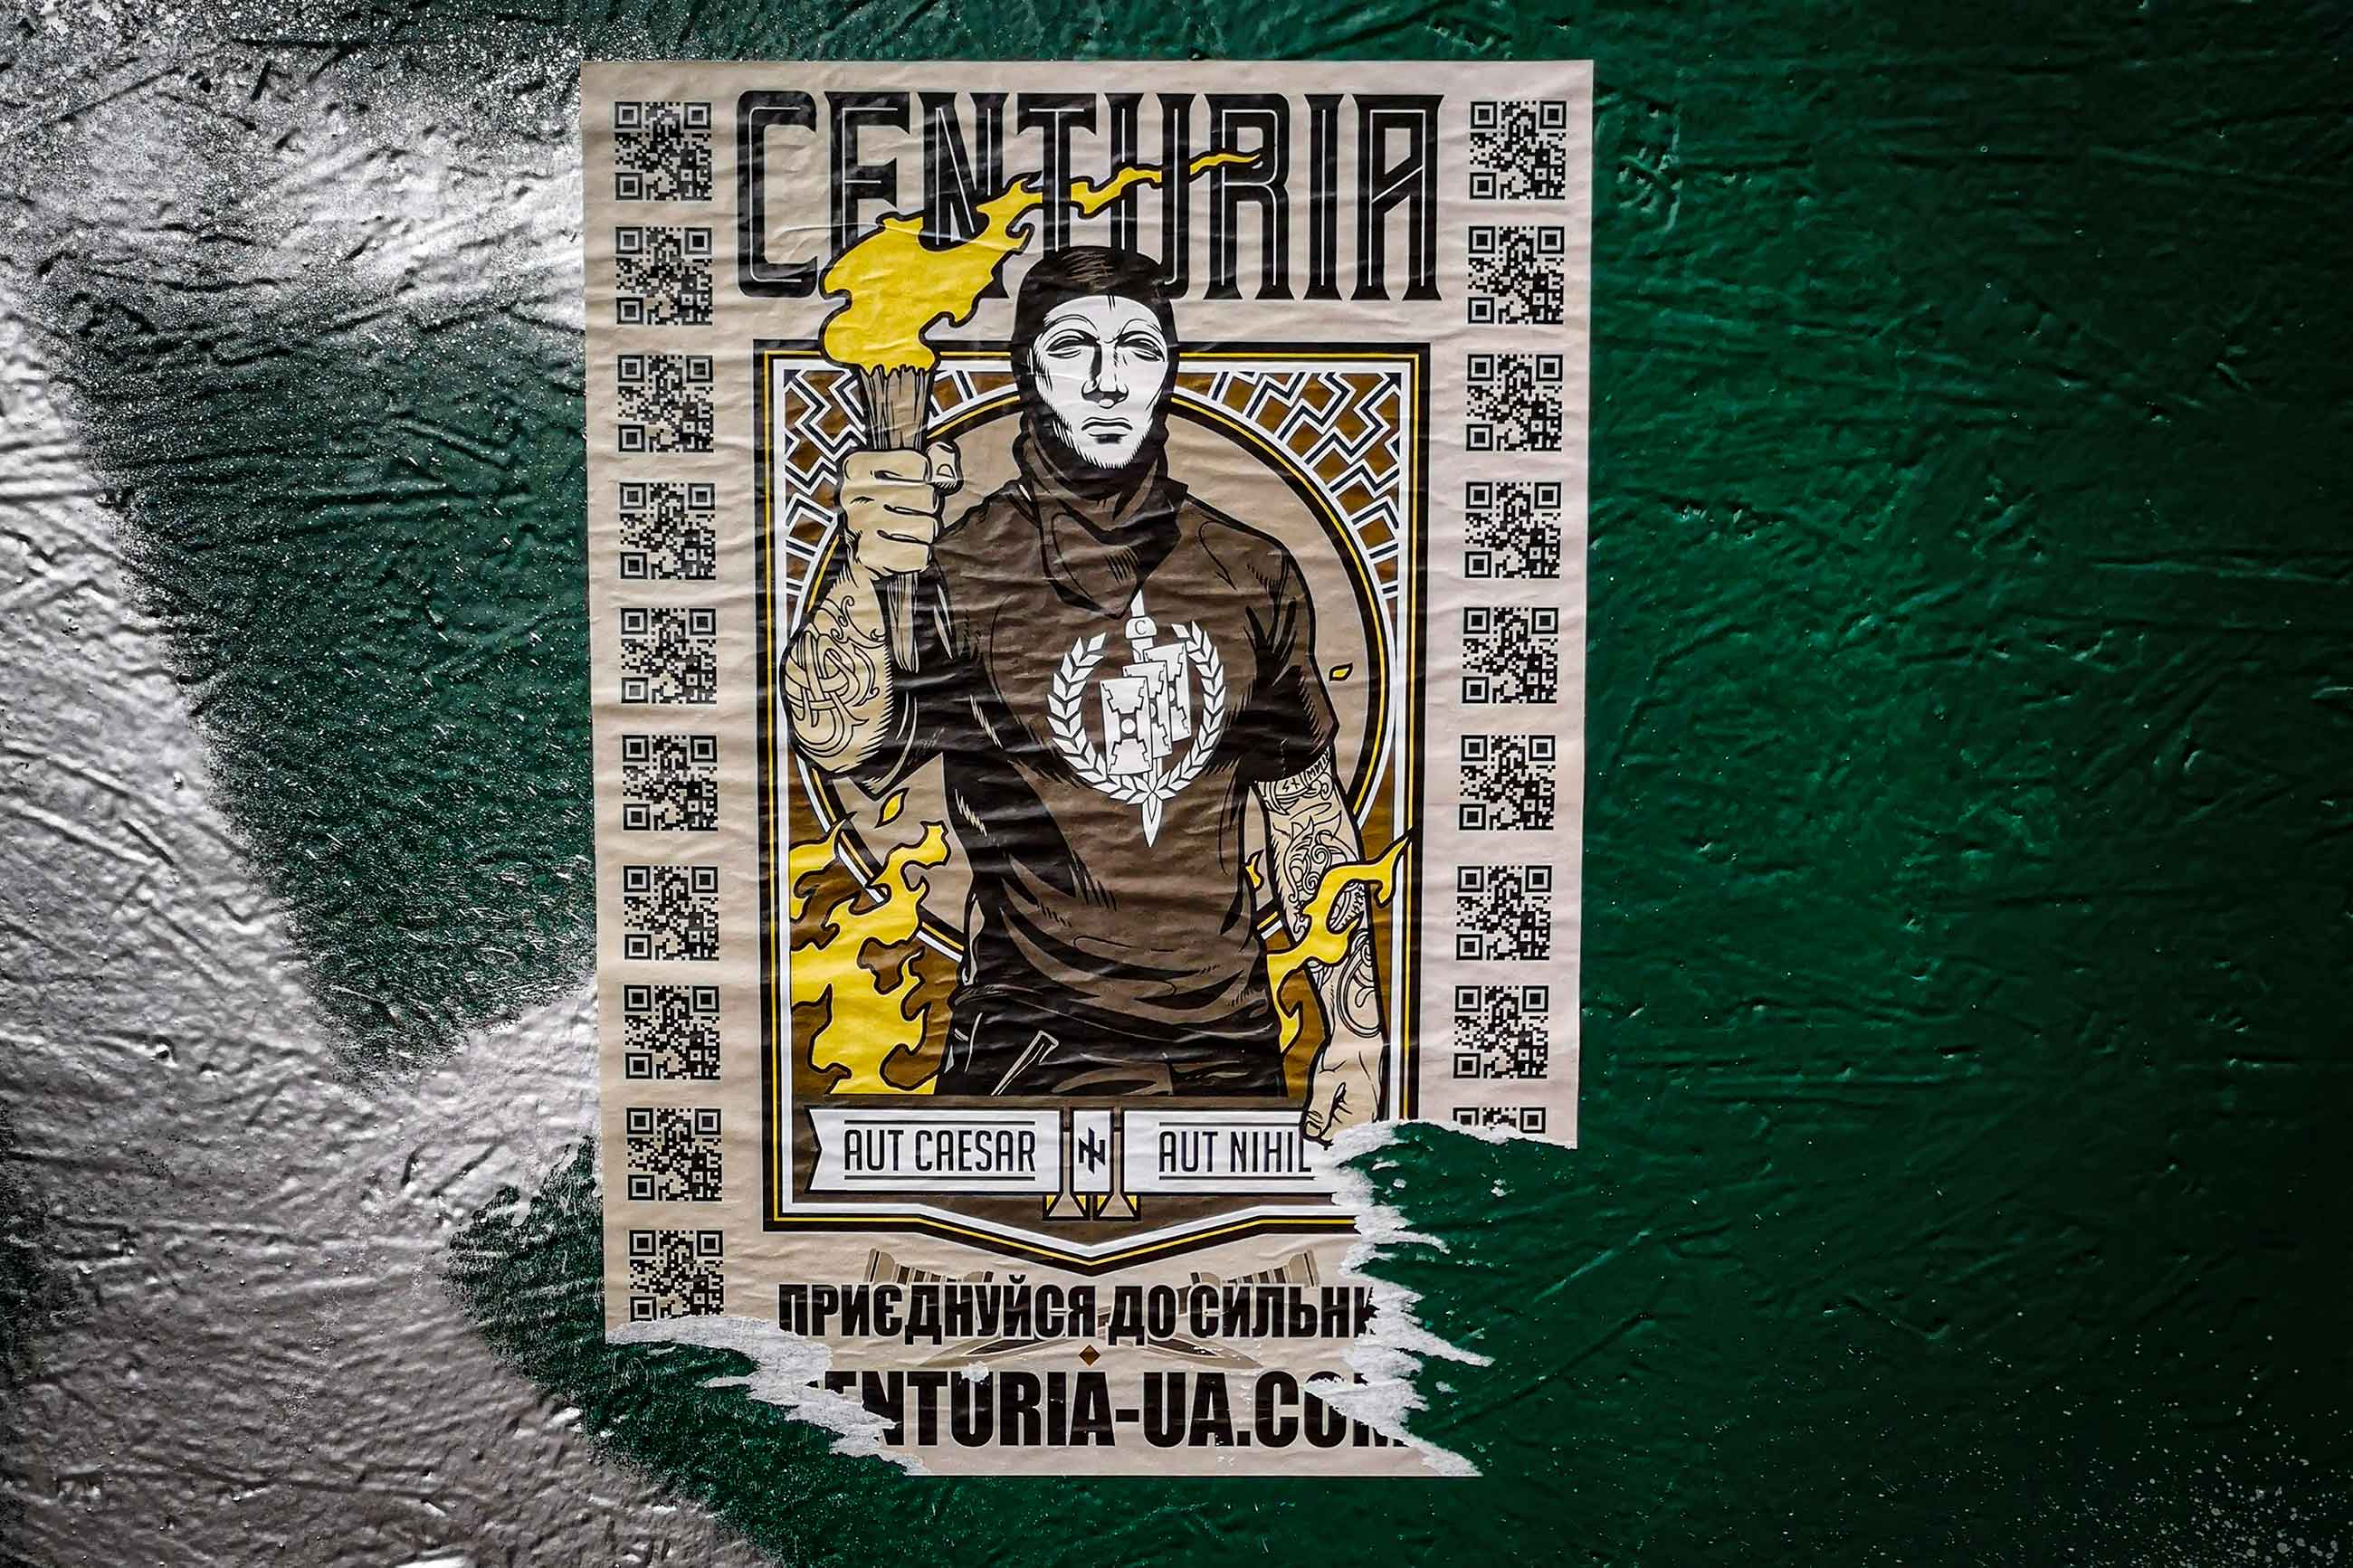 Зіґи, кельтський хрест та руни: найпопулярніша символіка українських ультраправих